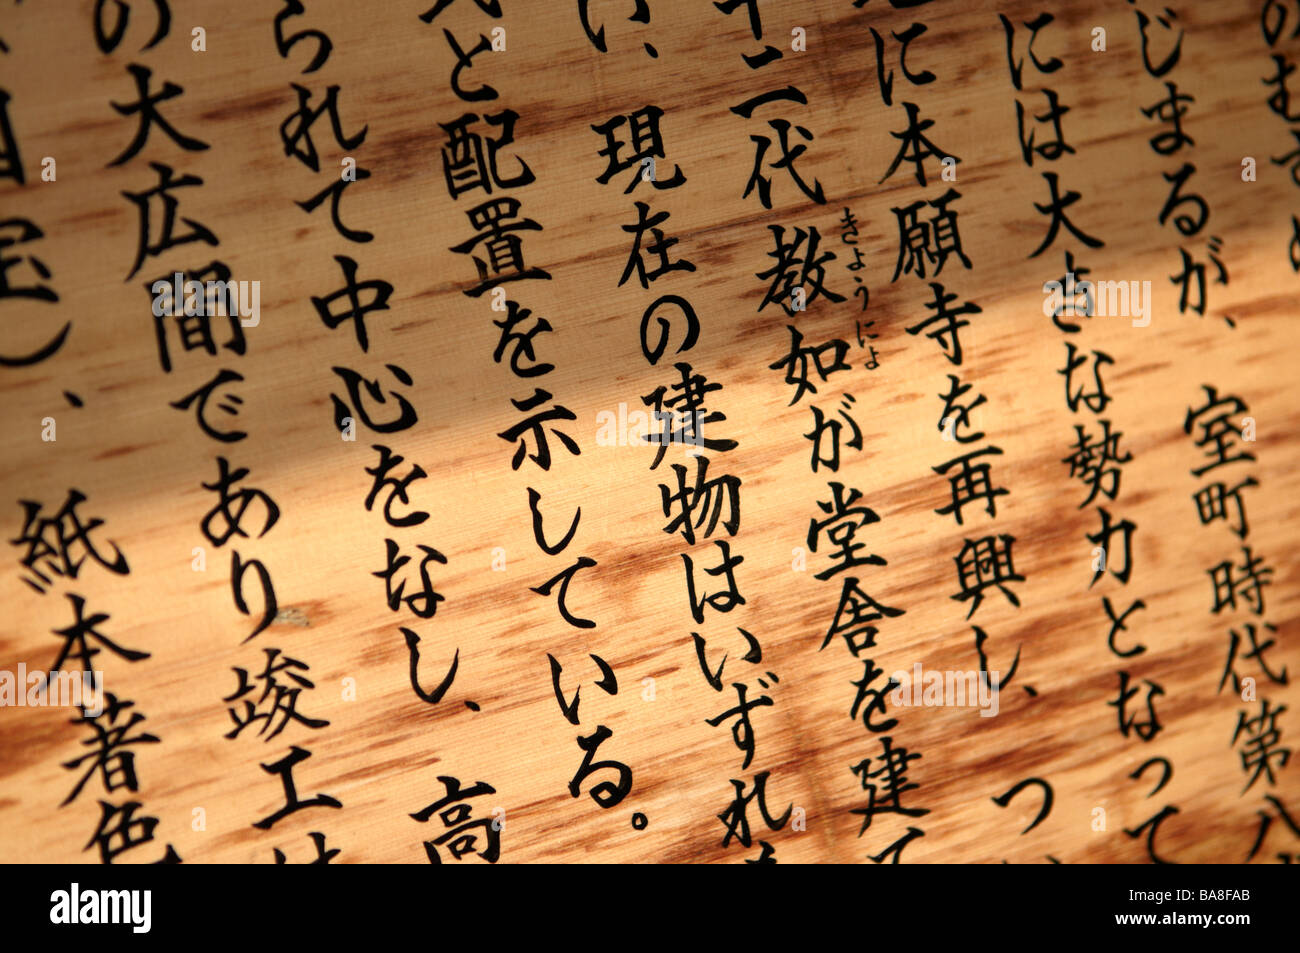 L'écriture japonaise sur une des lattes de bois à Kyoto, Japon Banque D'Images